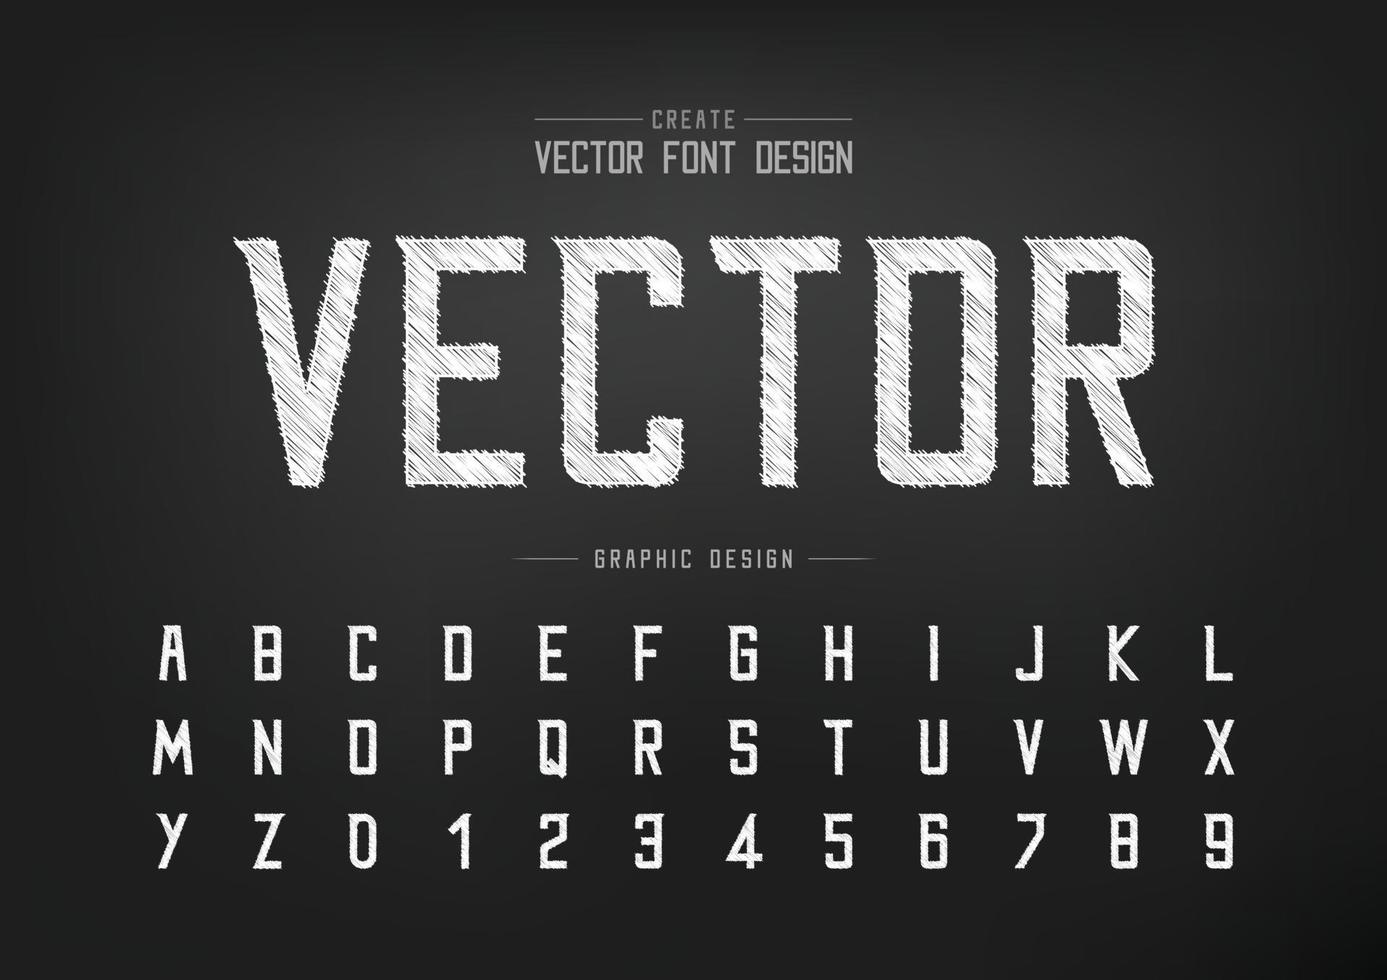 schets lettertype en alfabet vector, krijt modern lettertype en letter nummer ontwerp, grafische tekst op achtergrond vector